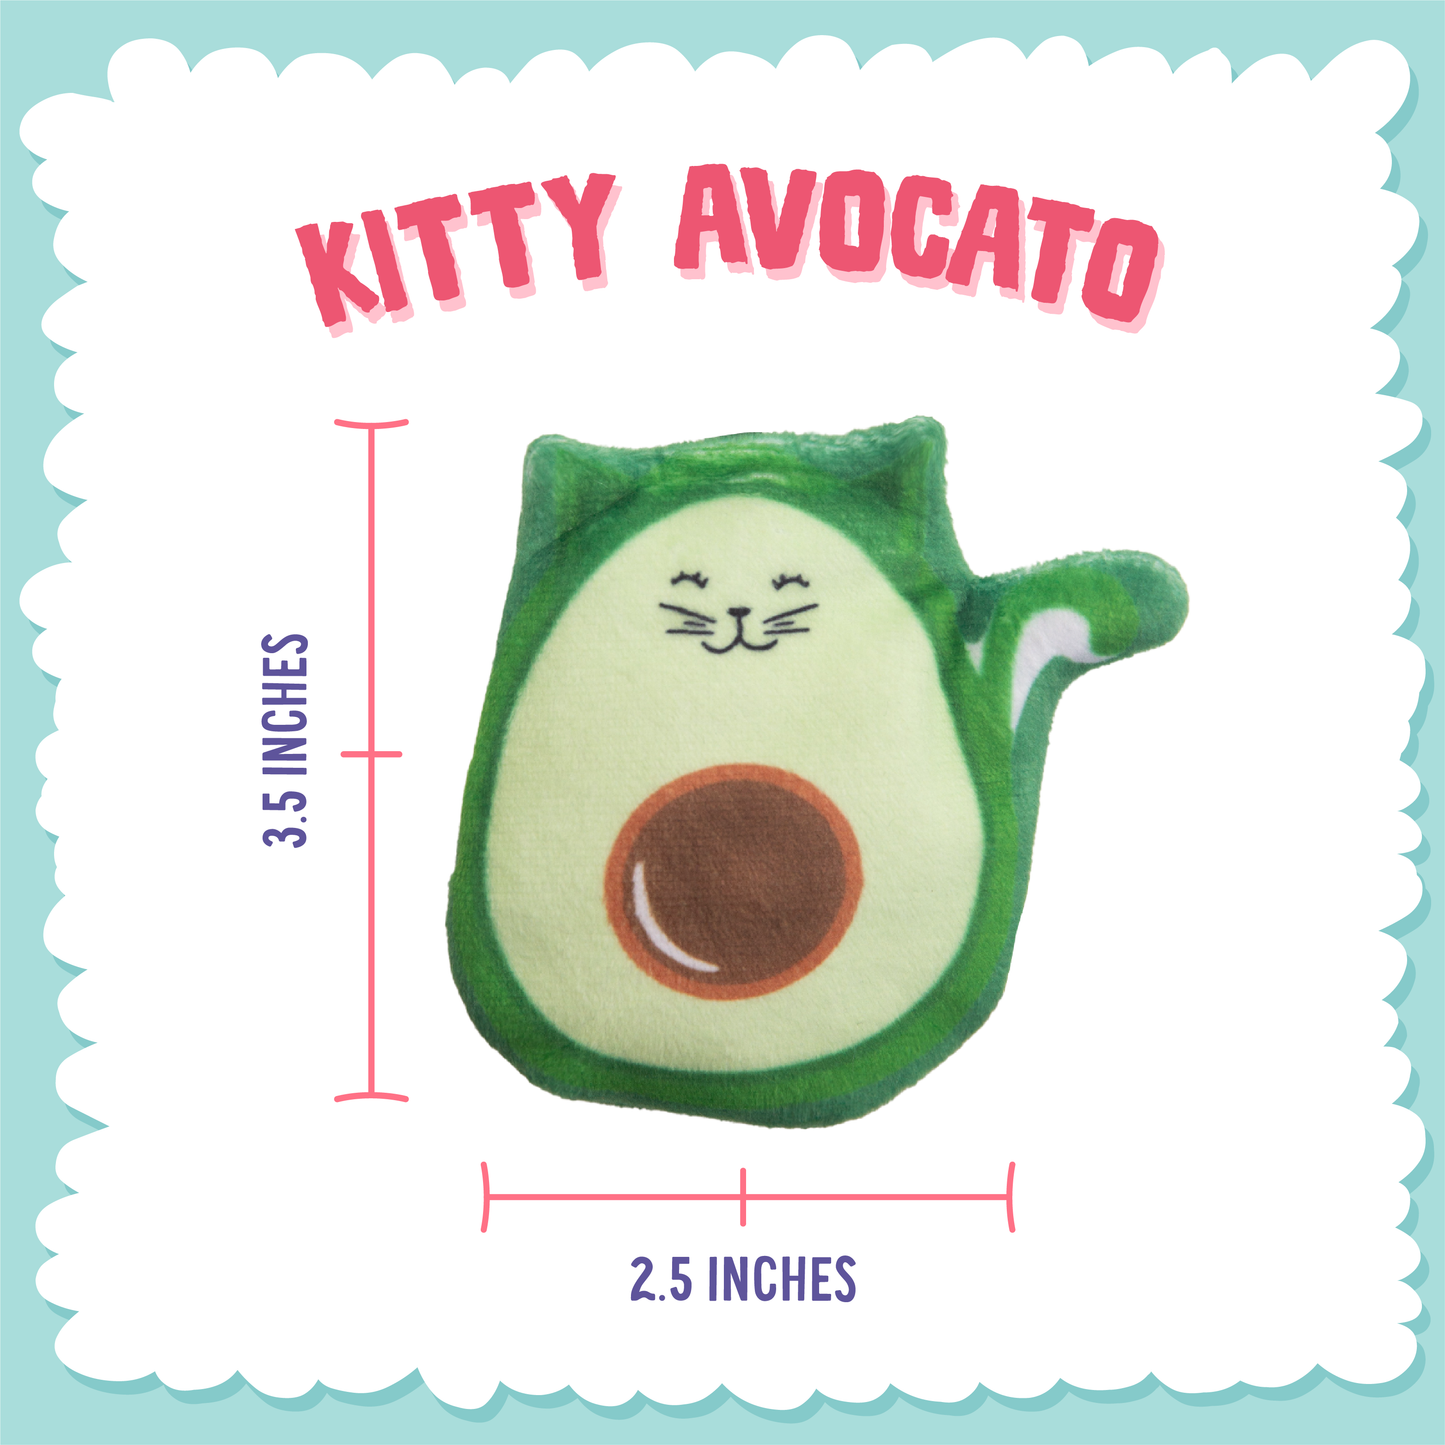 Kitty Avocato Cat Toy